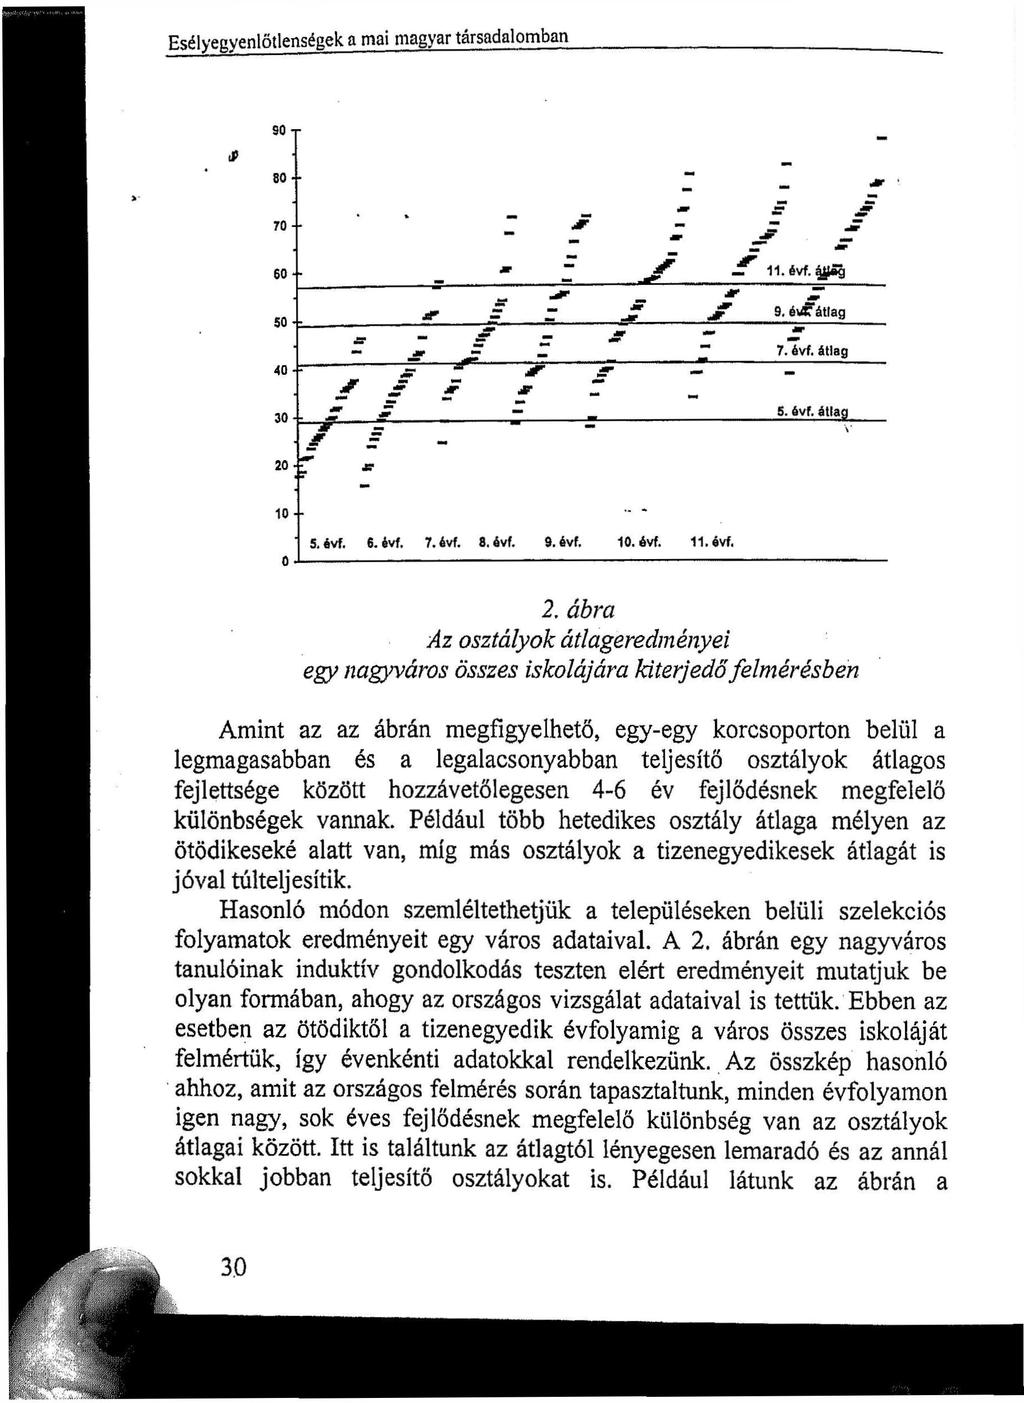 Esélyegyenlőtlenségek a mai magyar társadalomban so 80 ro _ M ' 80 M S ^T 11. évf. ^ag s JT ~ d r " - j f 9. év«átlag 50 40 Jf - r J? * - ~ 7. évf. átlag jf J jr jr Z ~ z S - 5. évf. átlag 30 i - v _ = = 20 Jff 10 0 5.